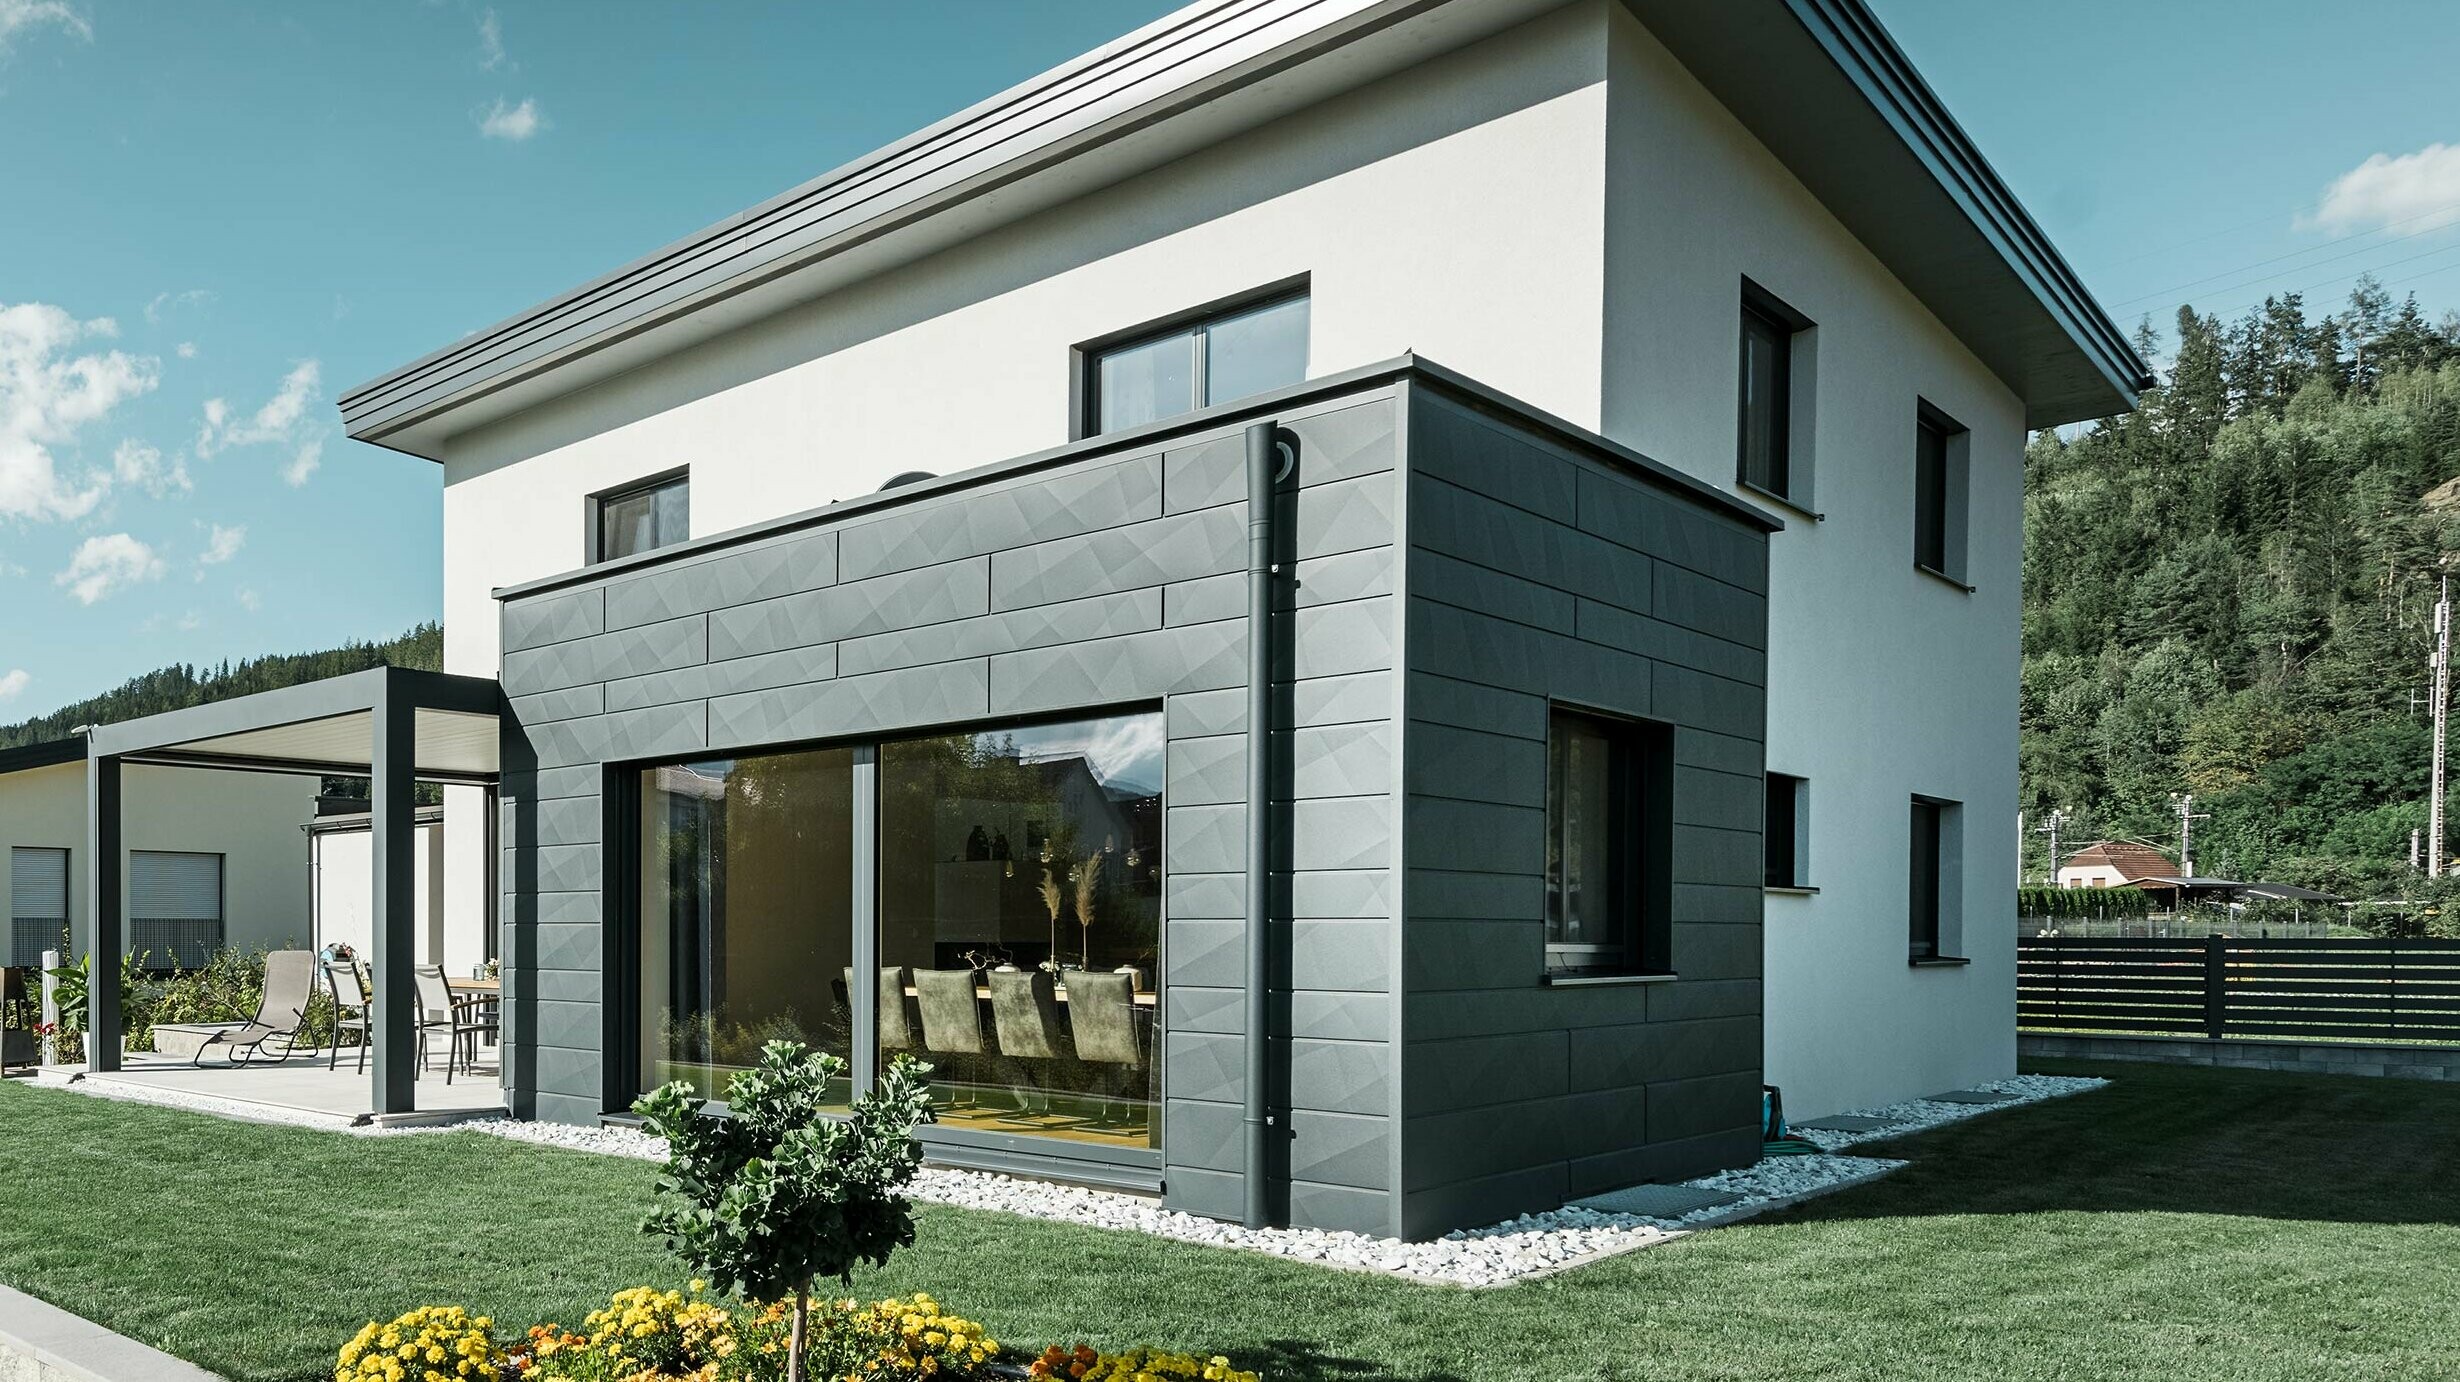 Enodružinska hiša s prizidkom, prizidek je izveden z aluminijasto fasado PREFA, odvodnjavanje ravne strehe je izvedeno z nastavkom za izliv PREFA in odtočno cevjo PREFA v barvi P.10 antracit,